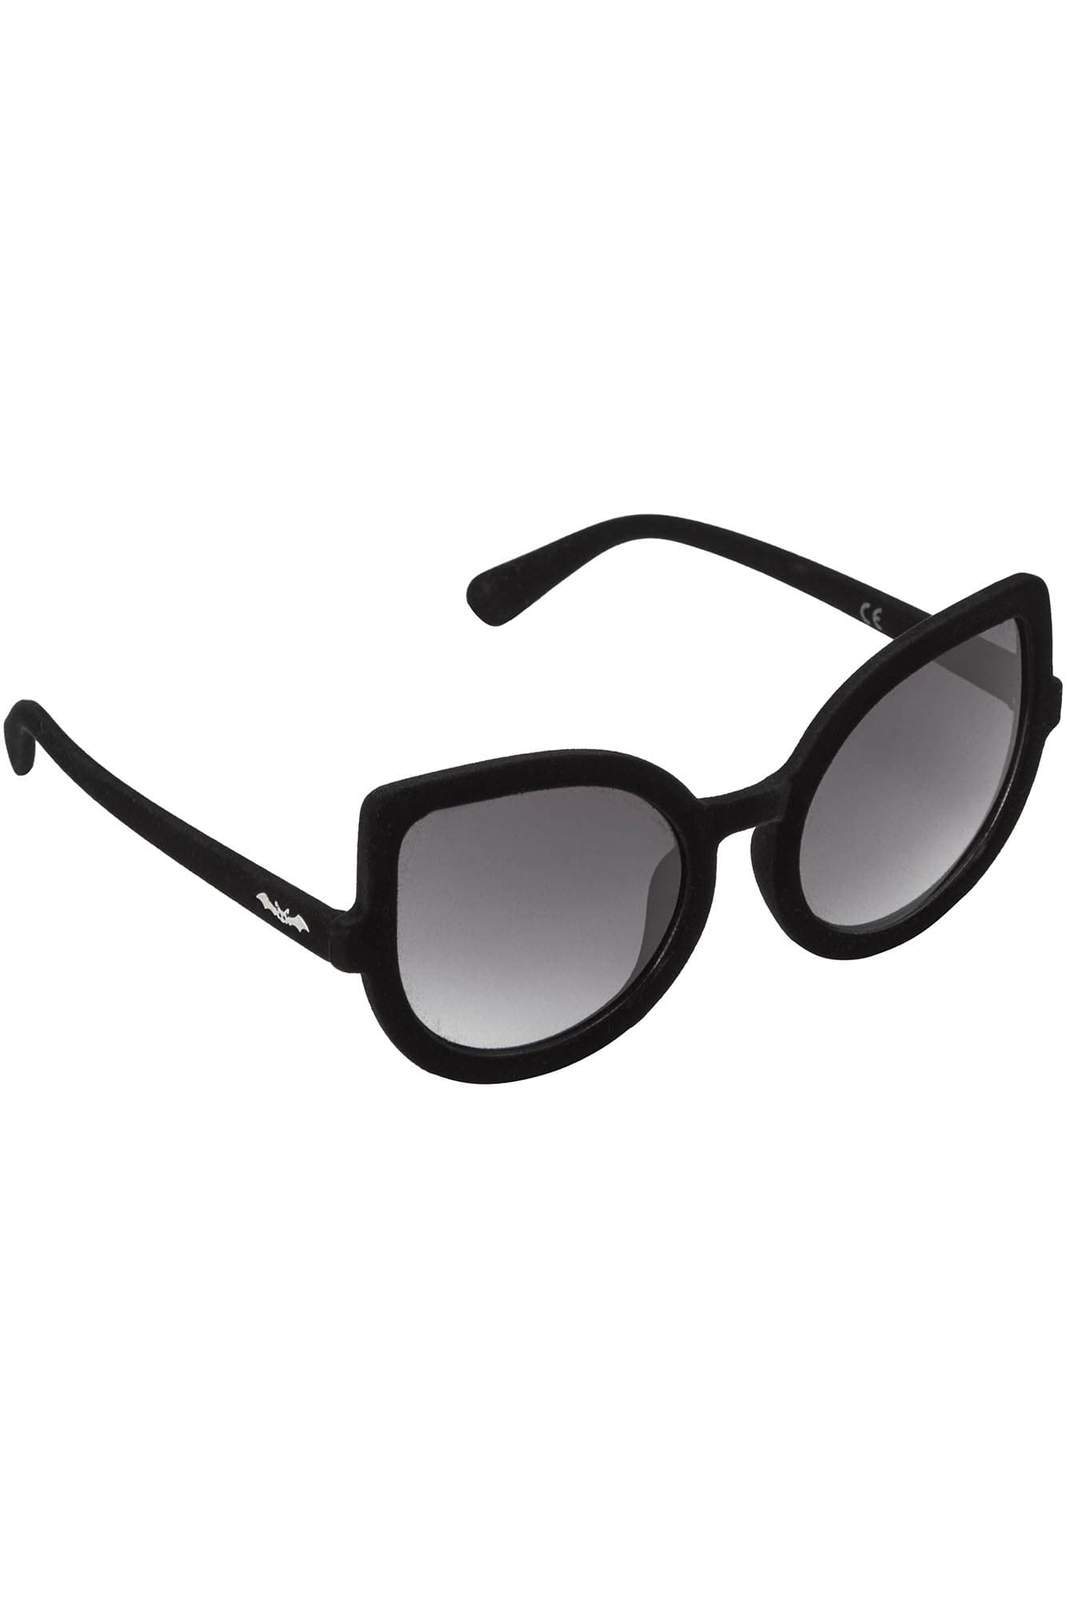 Space Kitty Sunglasses [Velvet]